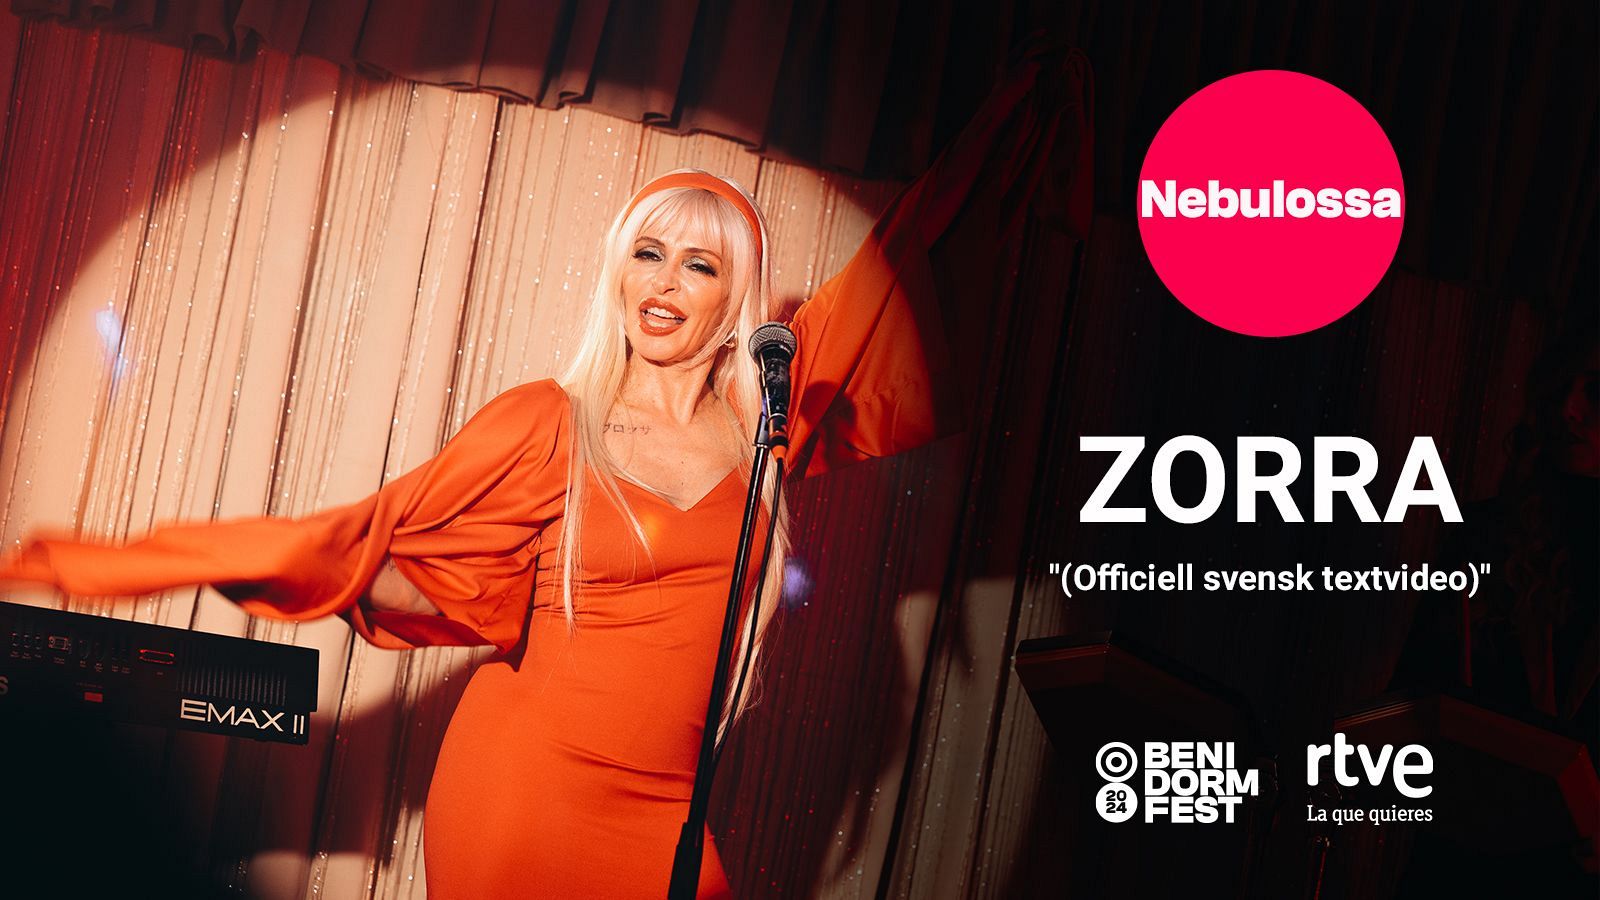 Zorra de Nebulossa: el nuevo fenómeno musical que arrasa en Spotify